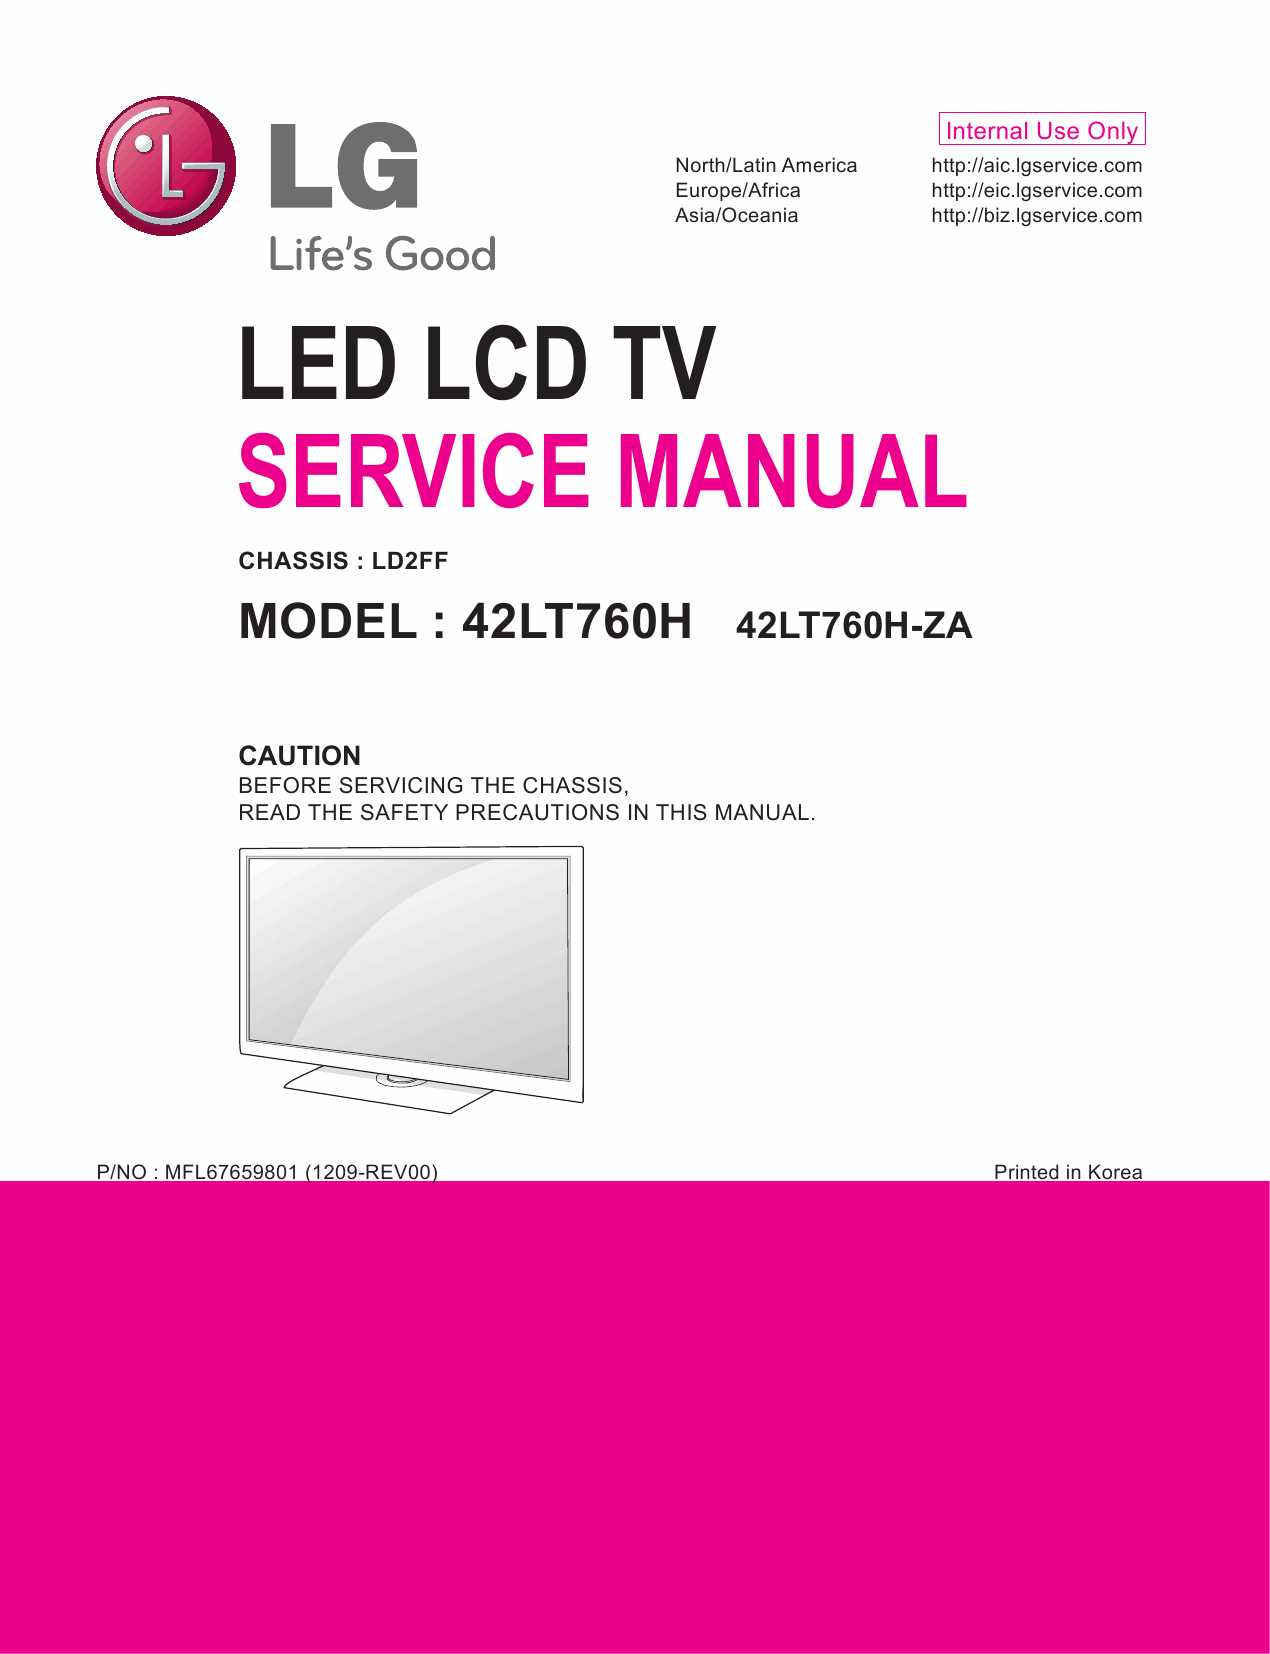 LG_LED_TV_42LT760H_Service_Manual_2012_Qmanual.com-1